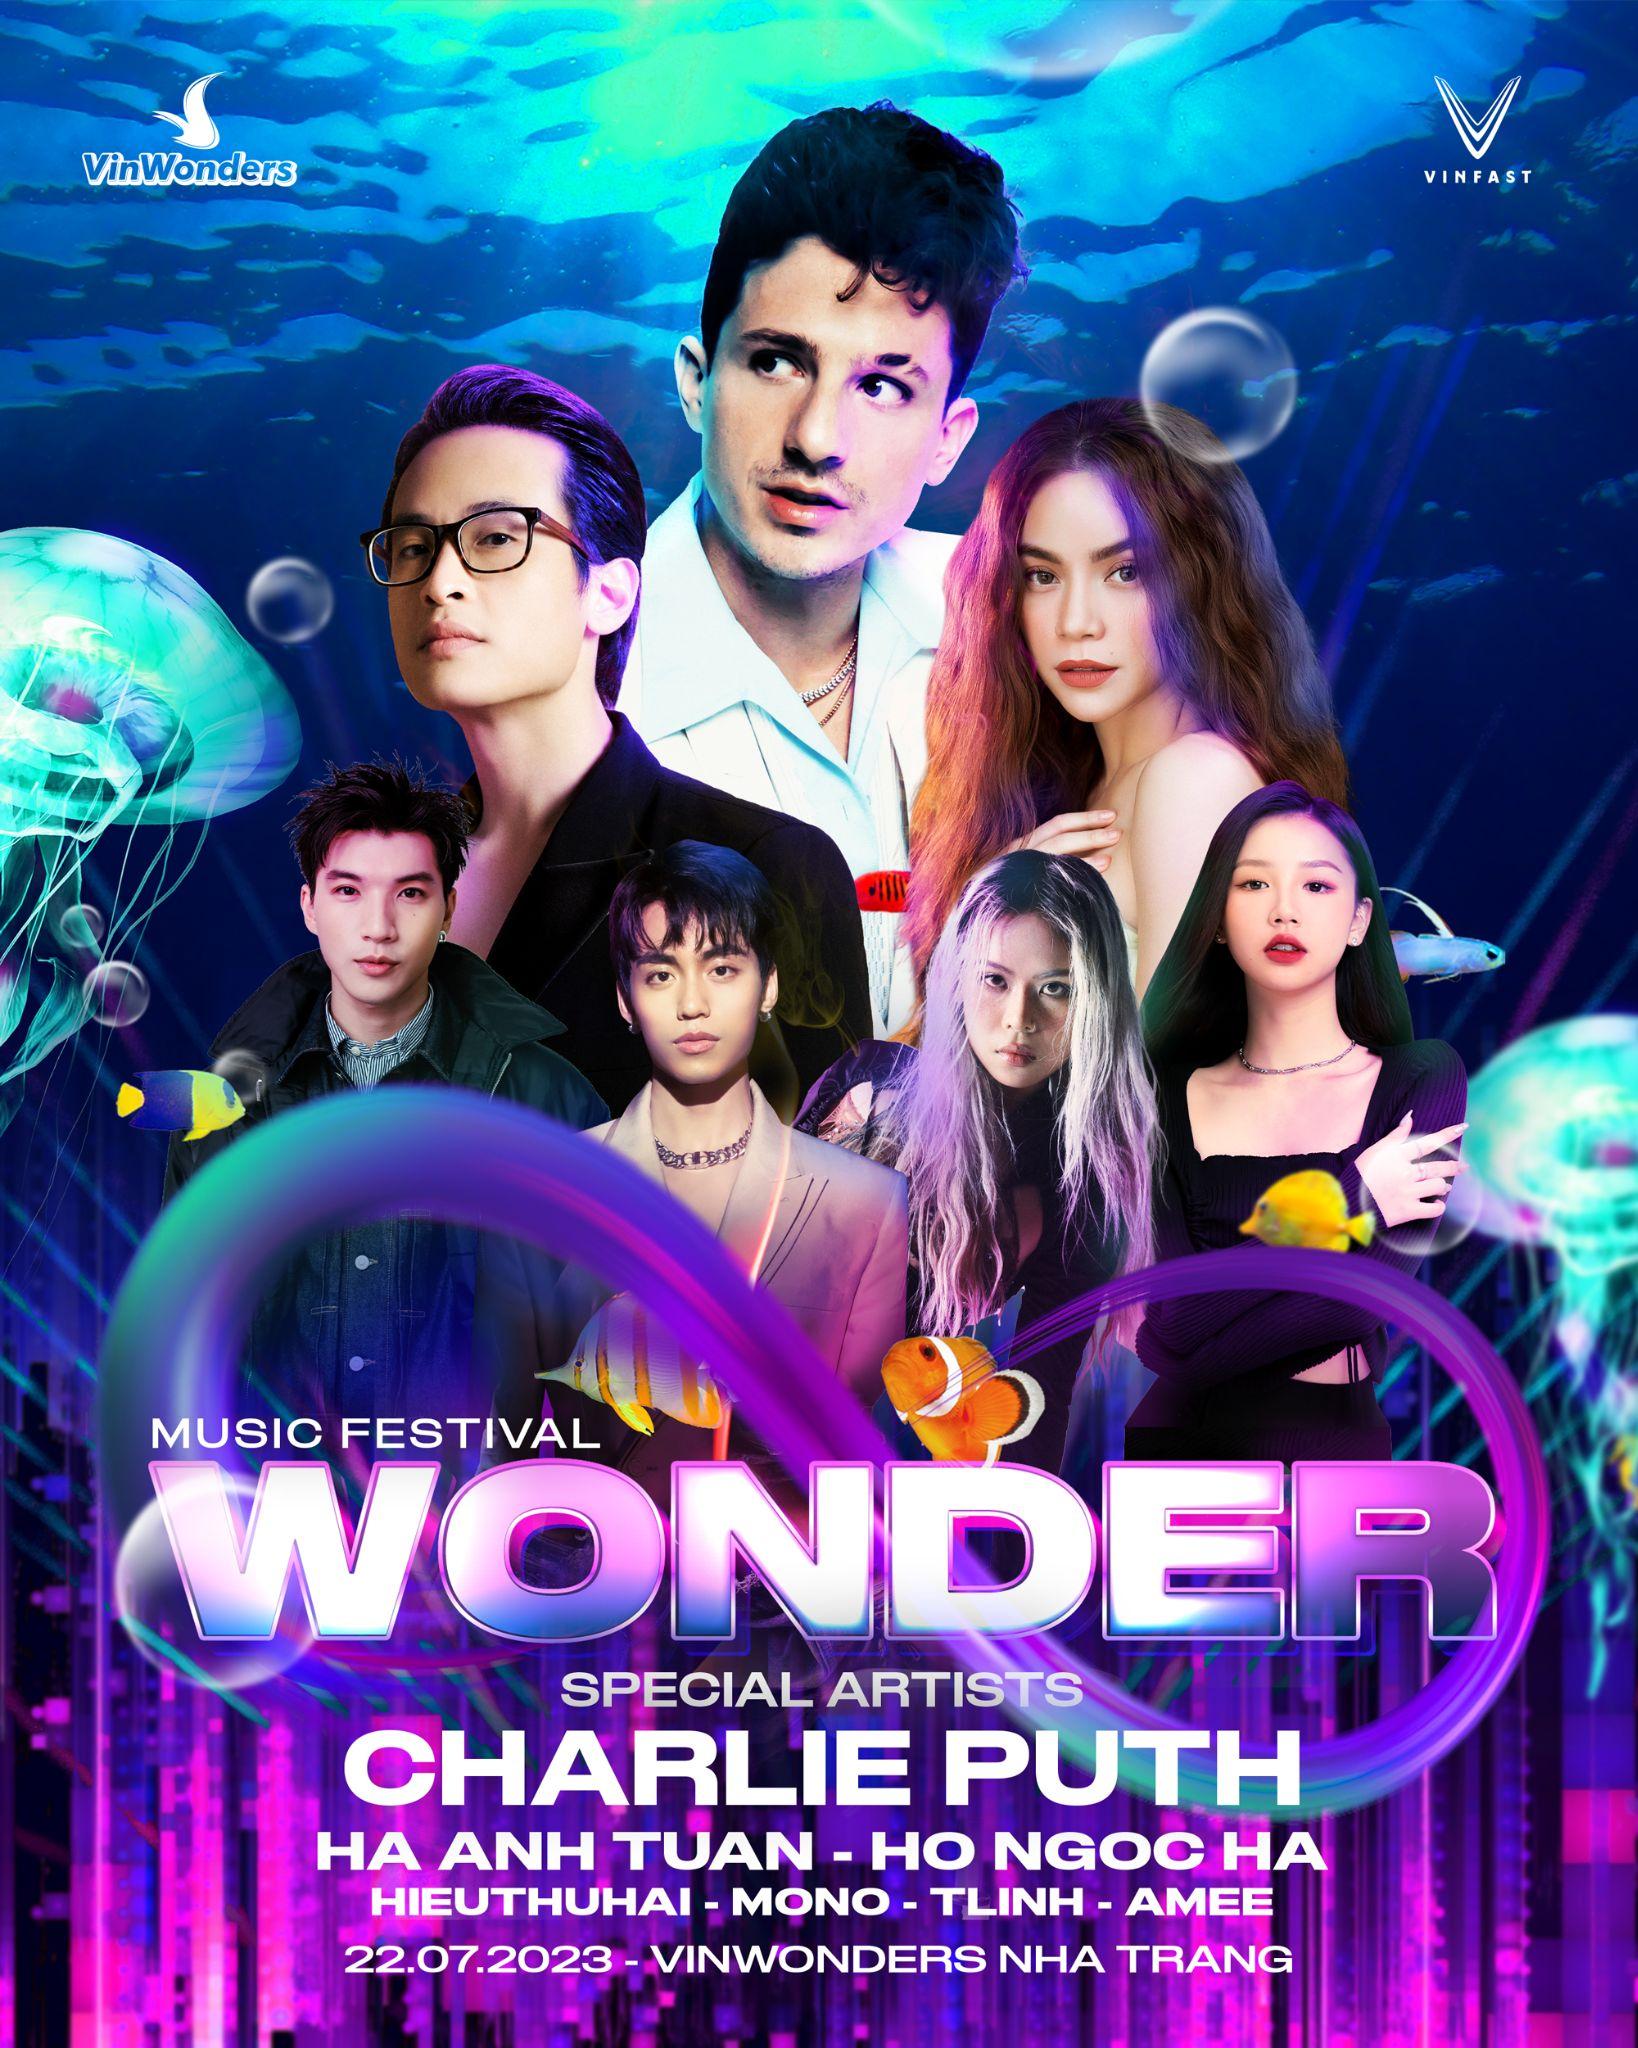 8Wonder mở bán vé - Công bố dàn sao Việt biểu diễn cùng Charlie Puth - Ảnh 1.